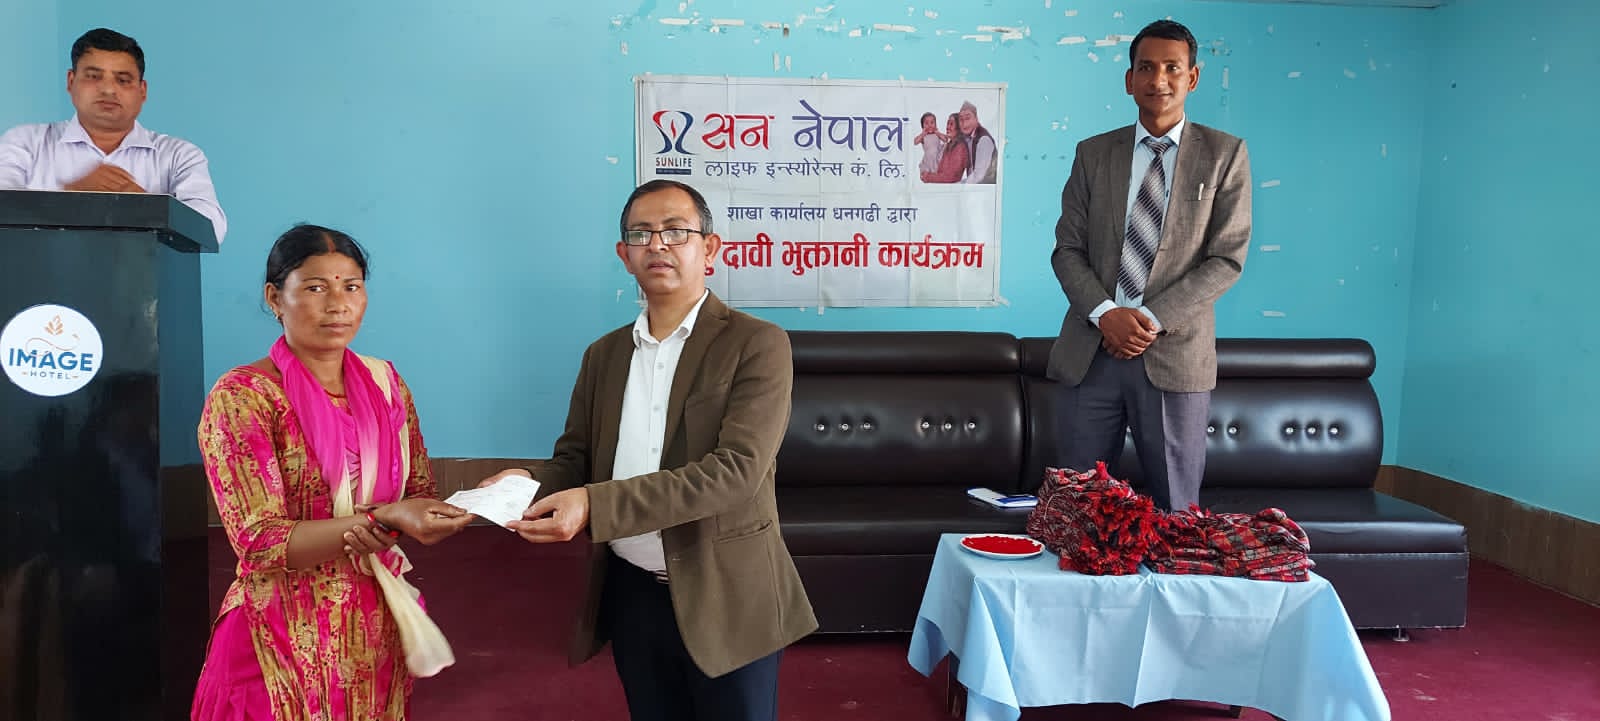 सन नेपाल लाइफले दियो २ लाख २० हजार रुपैयाँ मृत्यु दाबी वापतको रकम